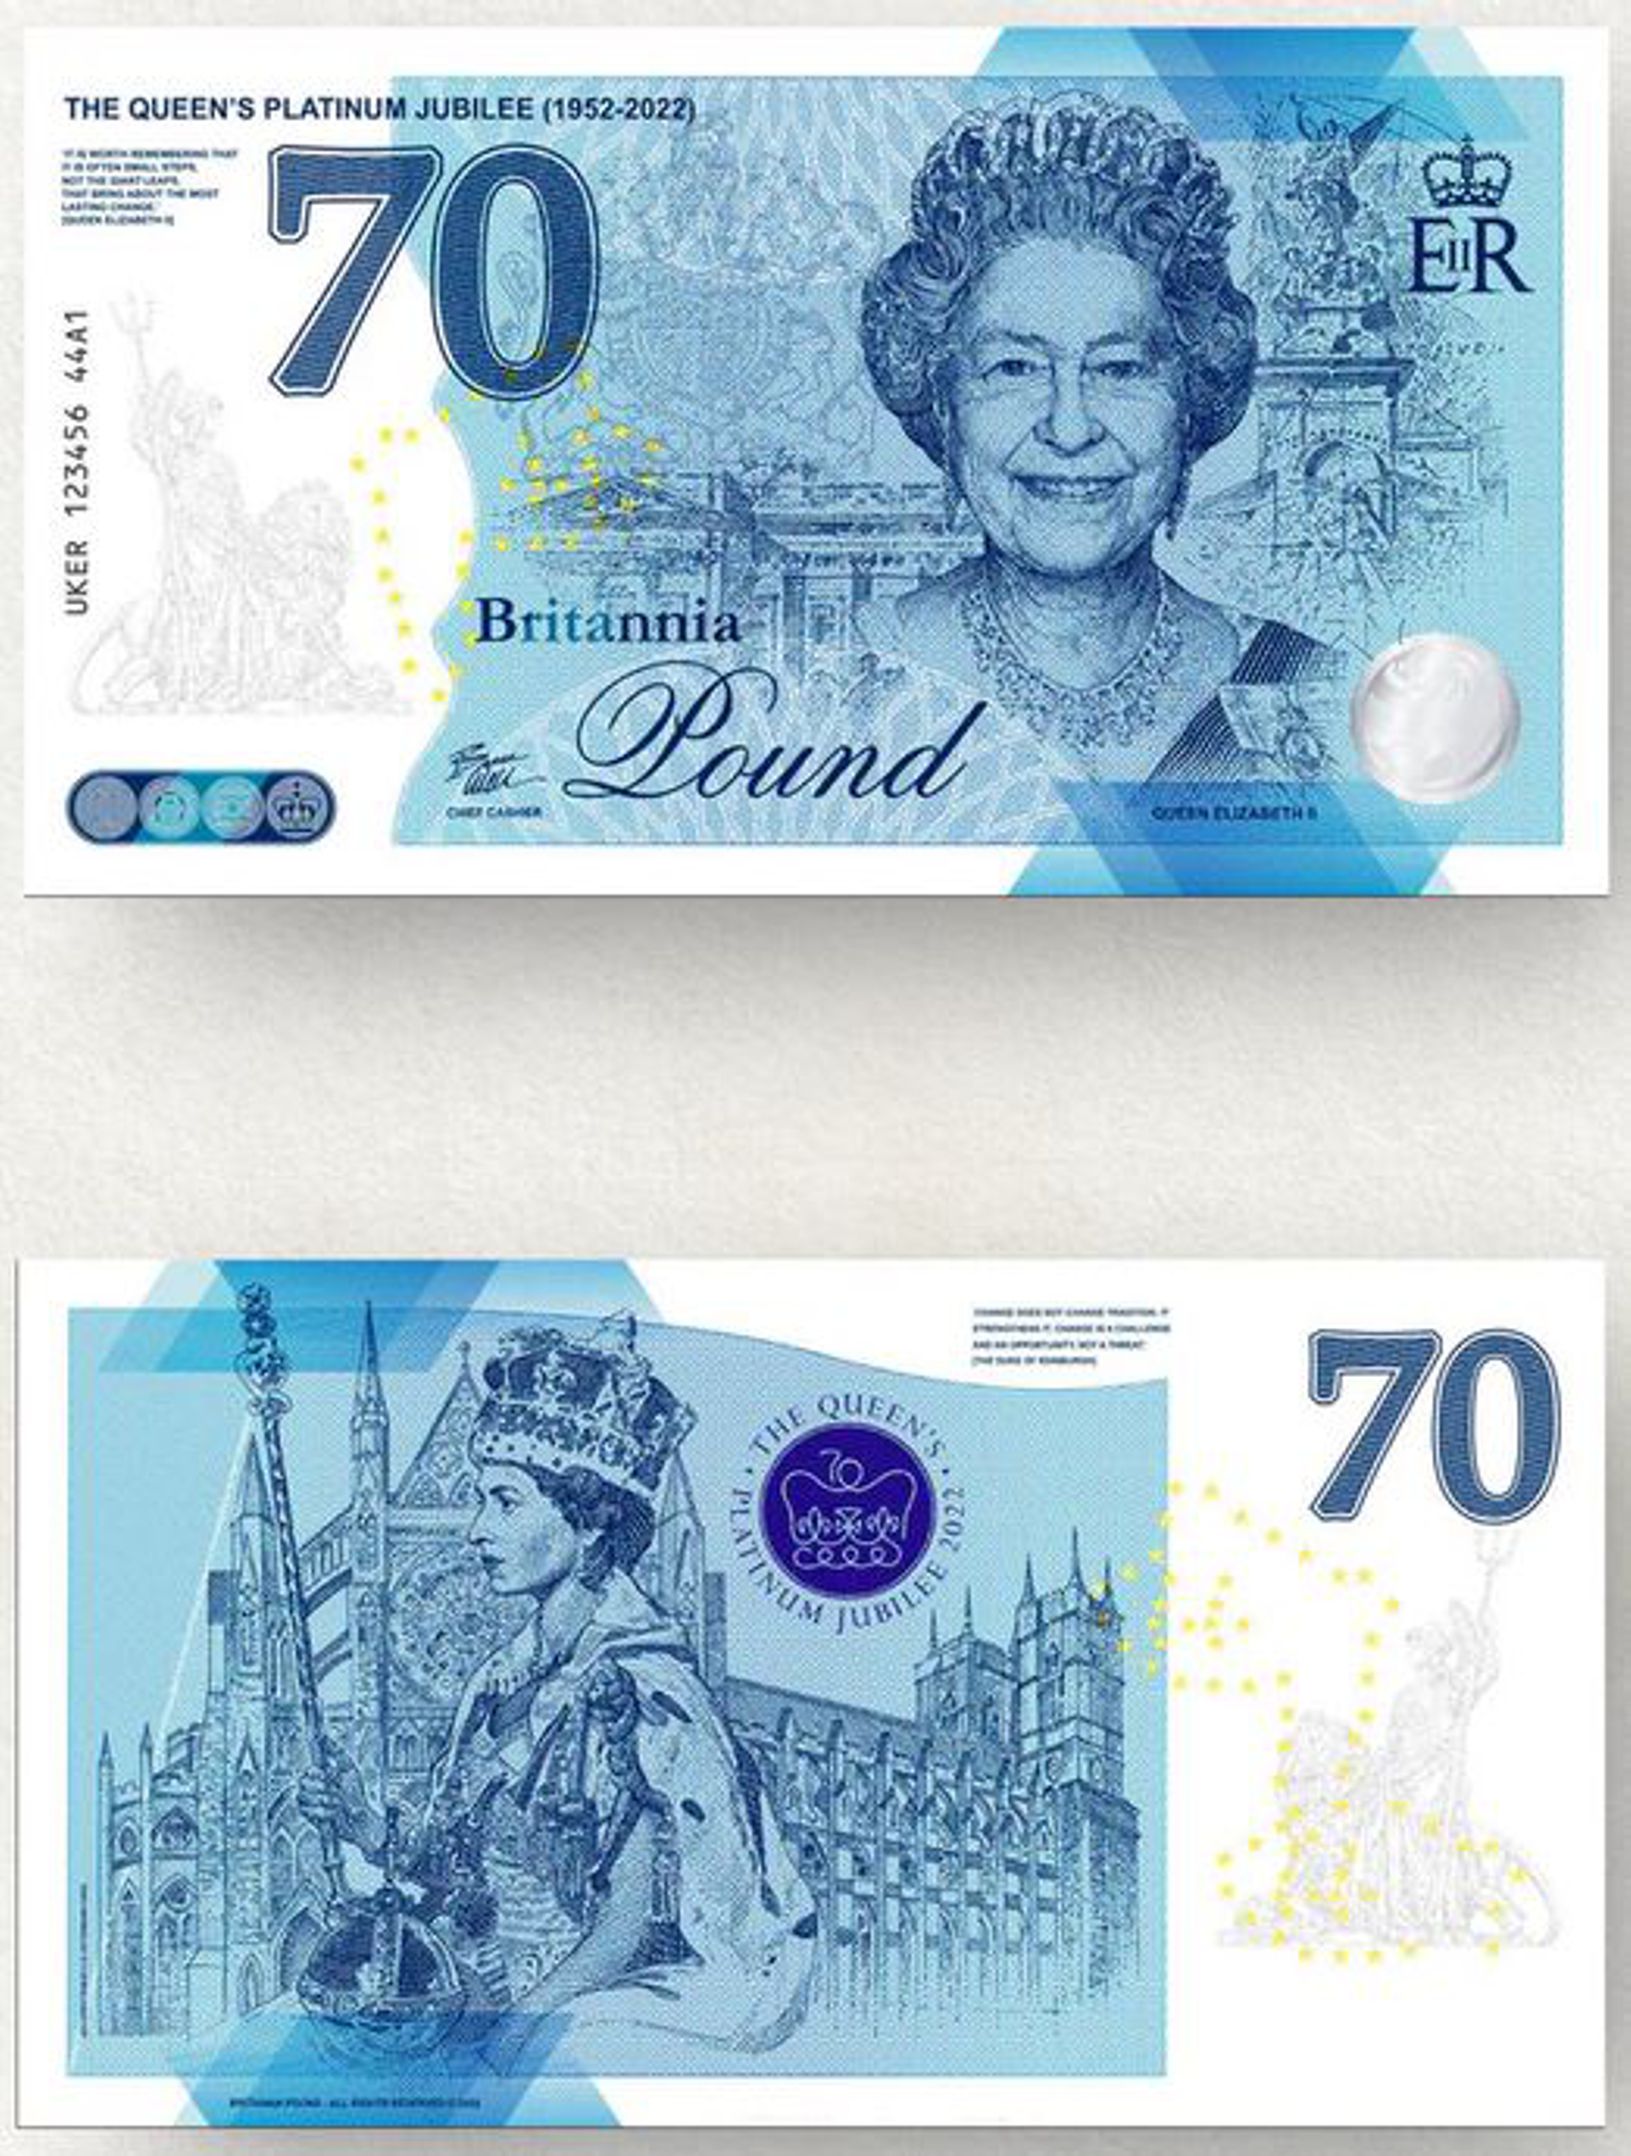 Britannia Pound "The Queens Platinum Jubilee" 2022 (UKER 44A2)